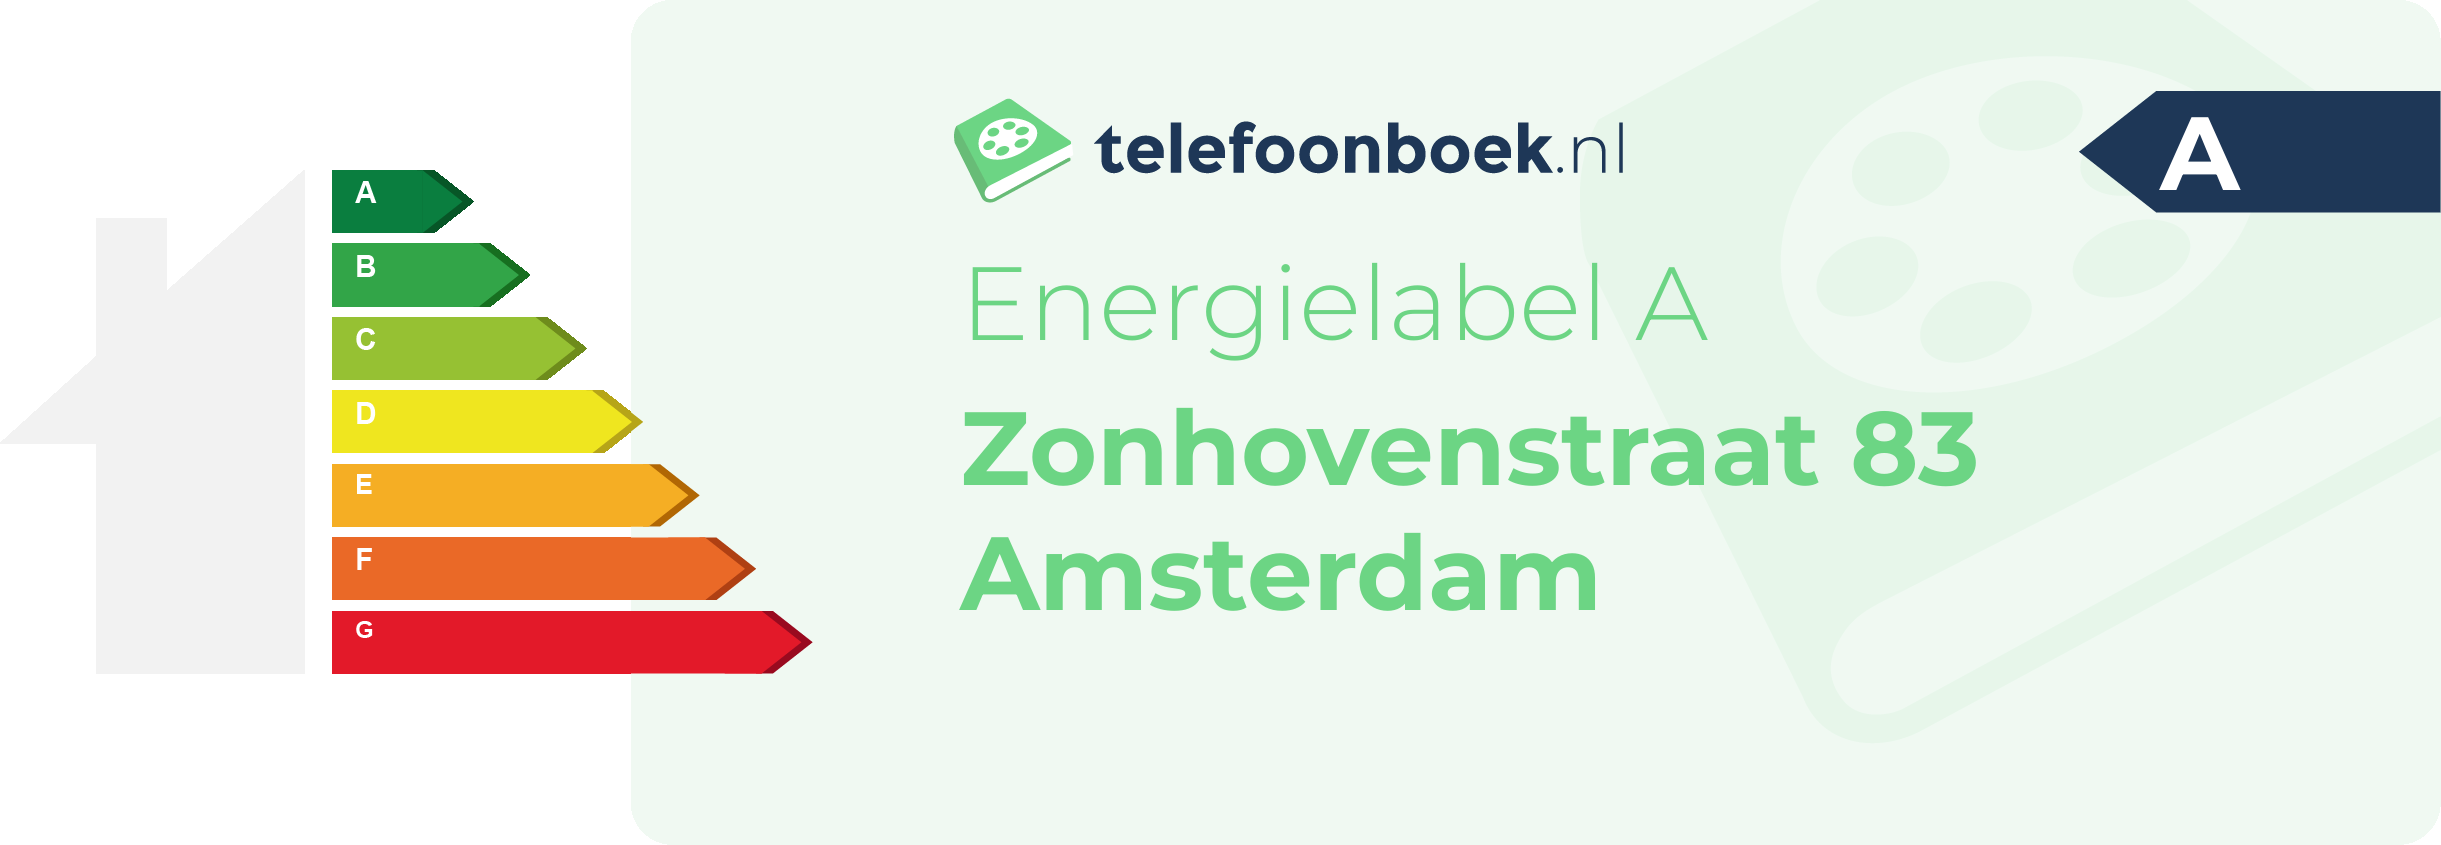 Energielabel Zonhovenstraat 83 Amsterdam